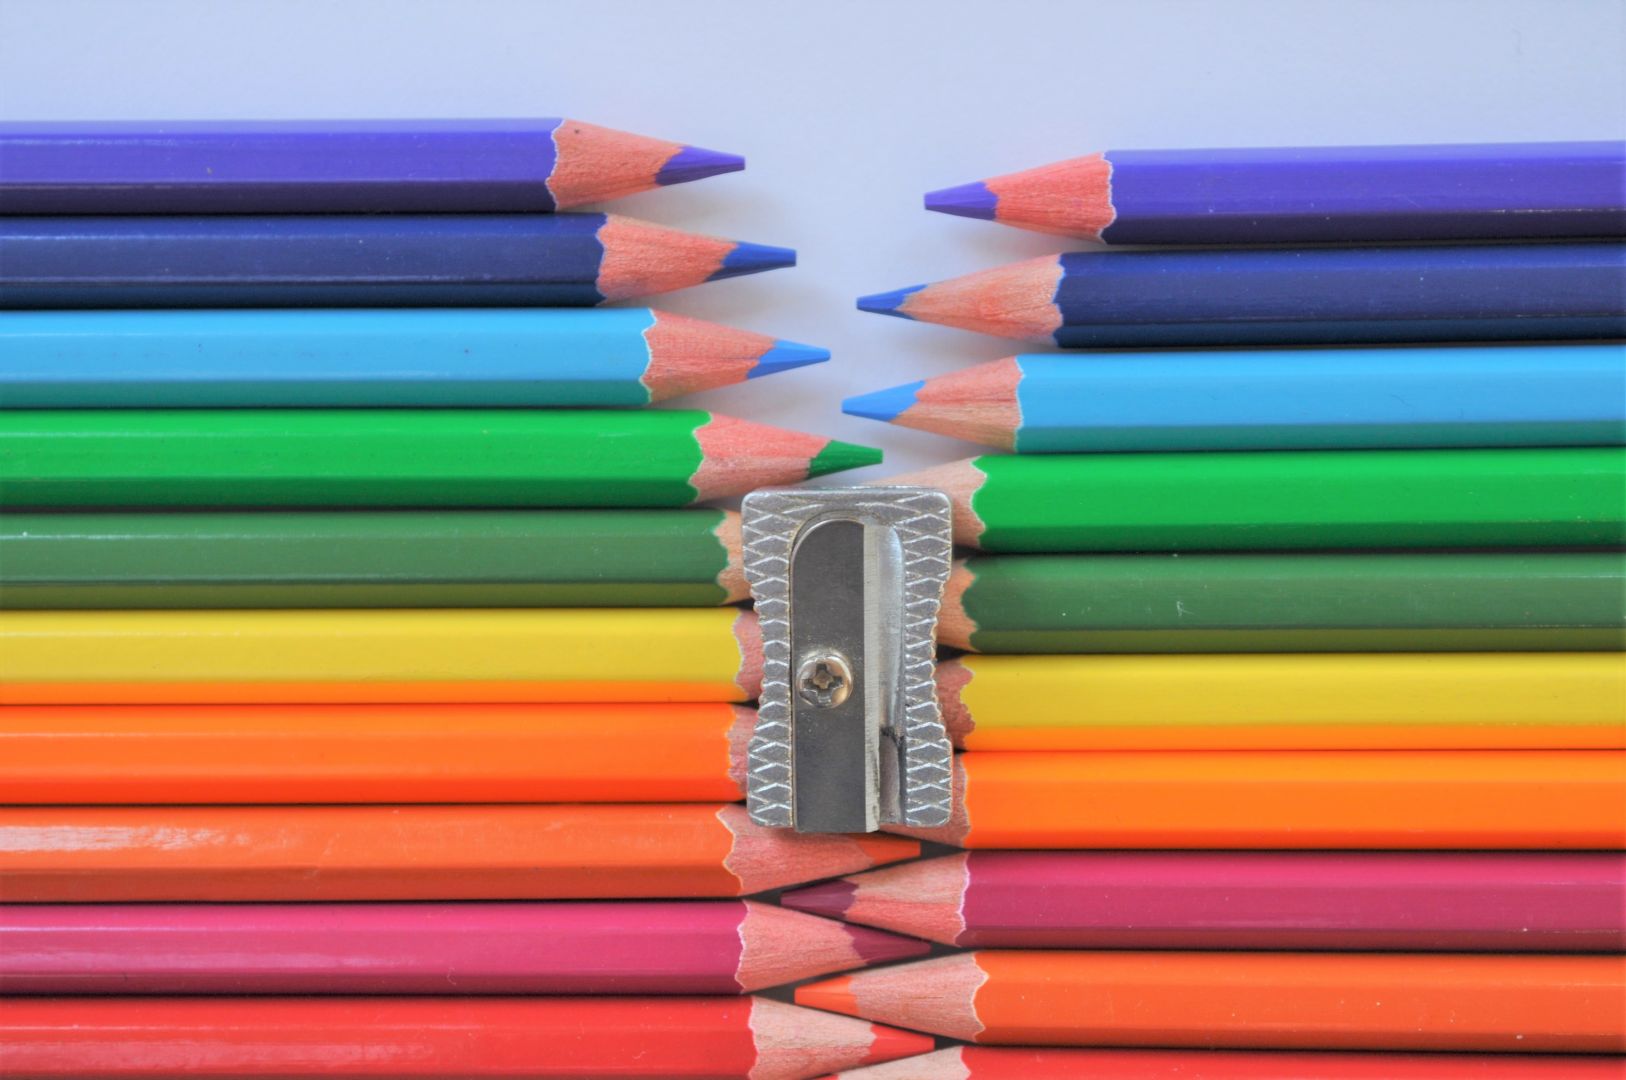 Разные карандаши. День цветных карандашей. Разноцветные карандаши разной длины. Сточенный карандаш. День цветных карандашей картинки